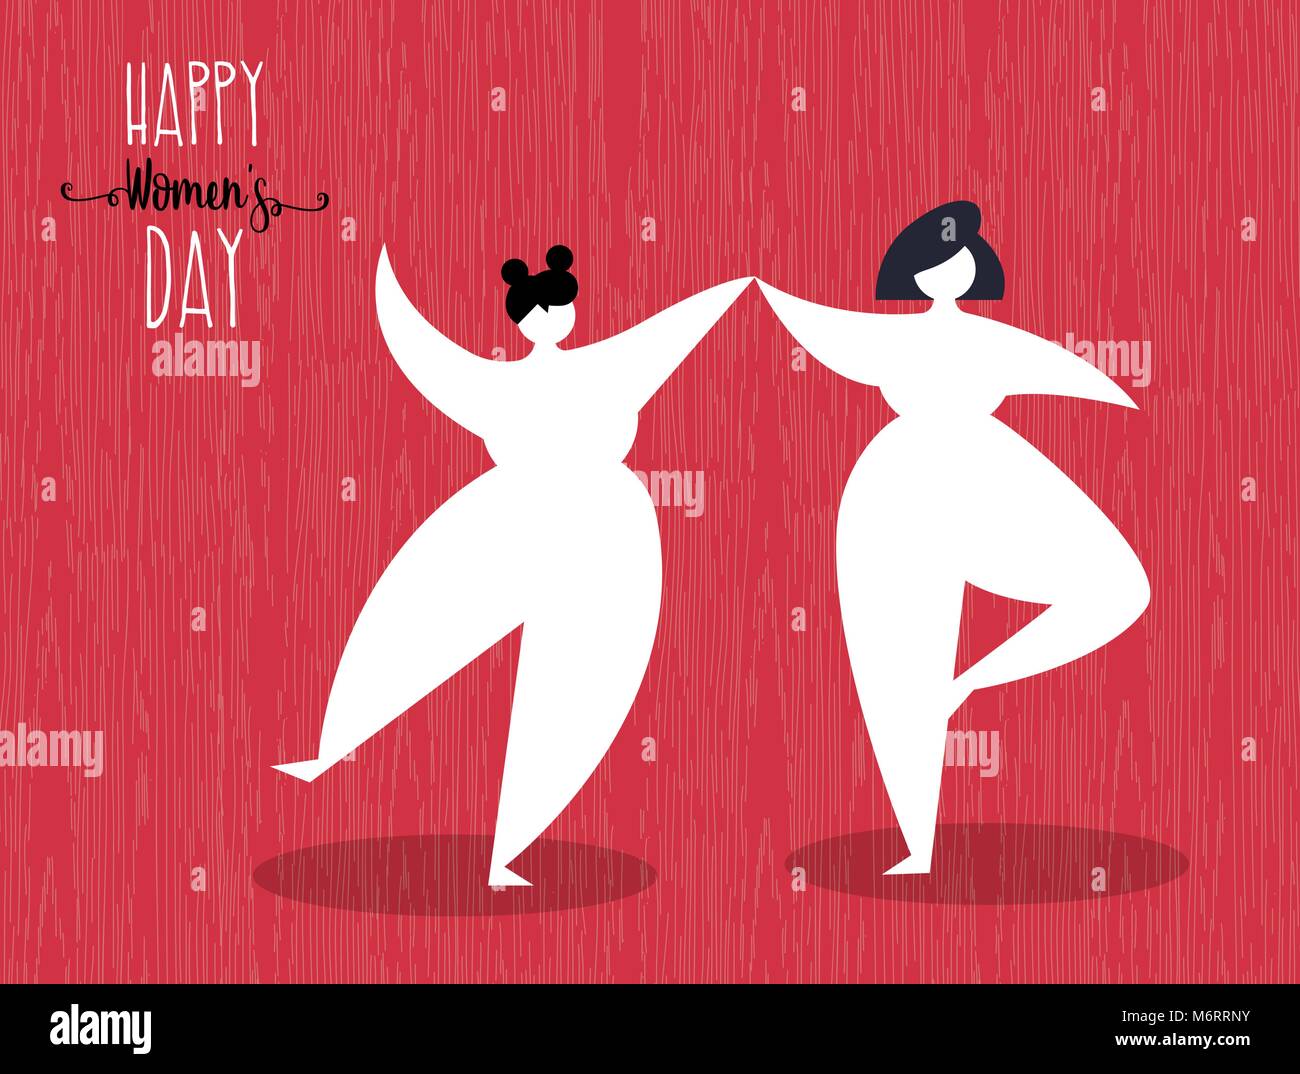 Einen glücklichen Tag der Frau Grußkarte Abbildung: Freunde tanzen für Frau event Feier. EPS 10 Vektor. Stock Vektor